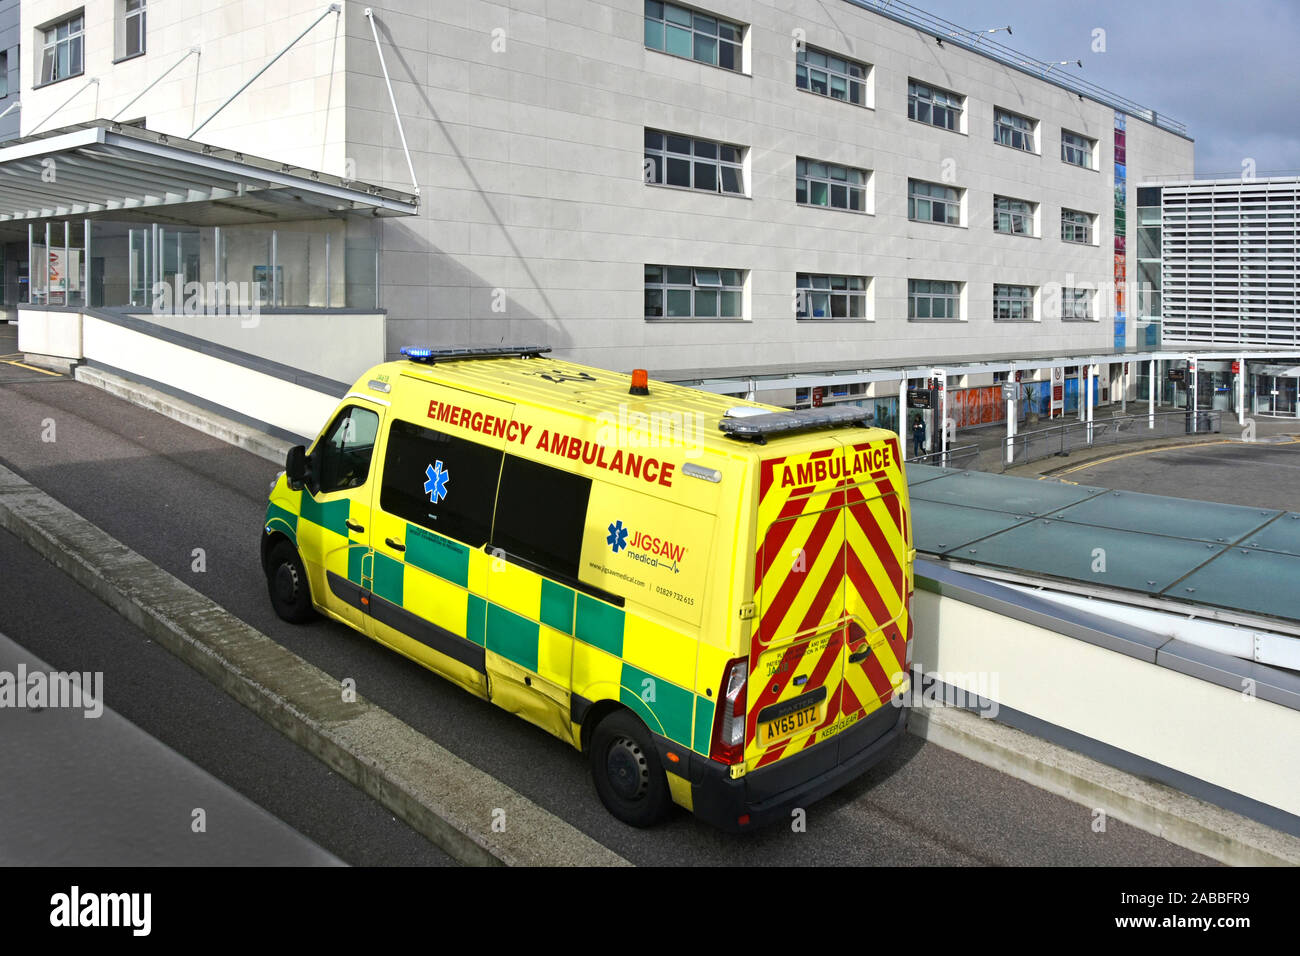 Broomfield NHS Hospital ambulance d'urgence privée une entreprise exploitée par Jigsaw Medical lumières bleues sur la rampe d'accès au département A&E dans l'Essex Royaume-Uni Banque D'Images